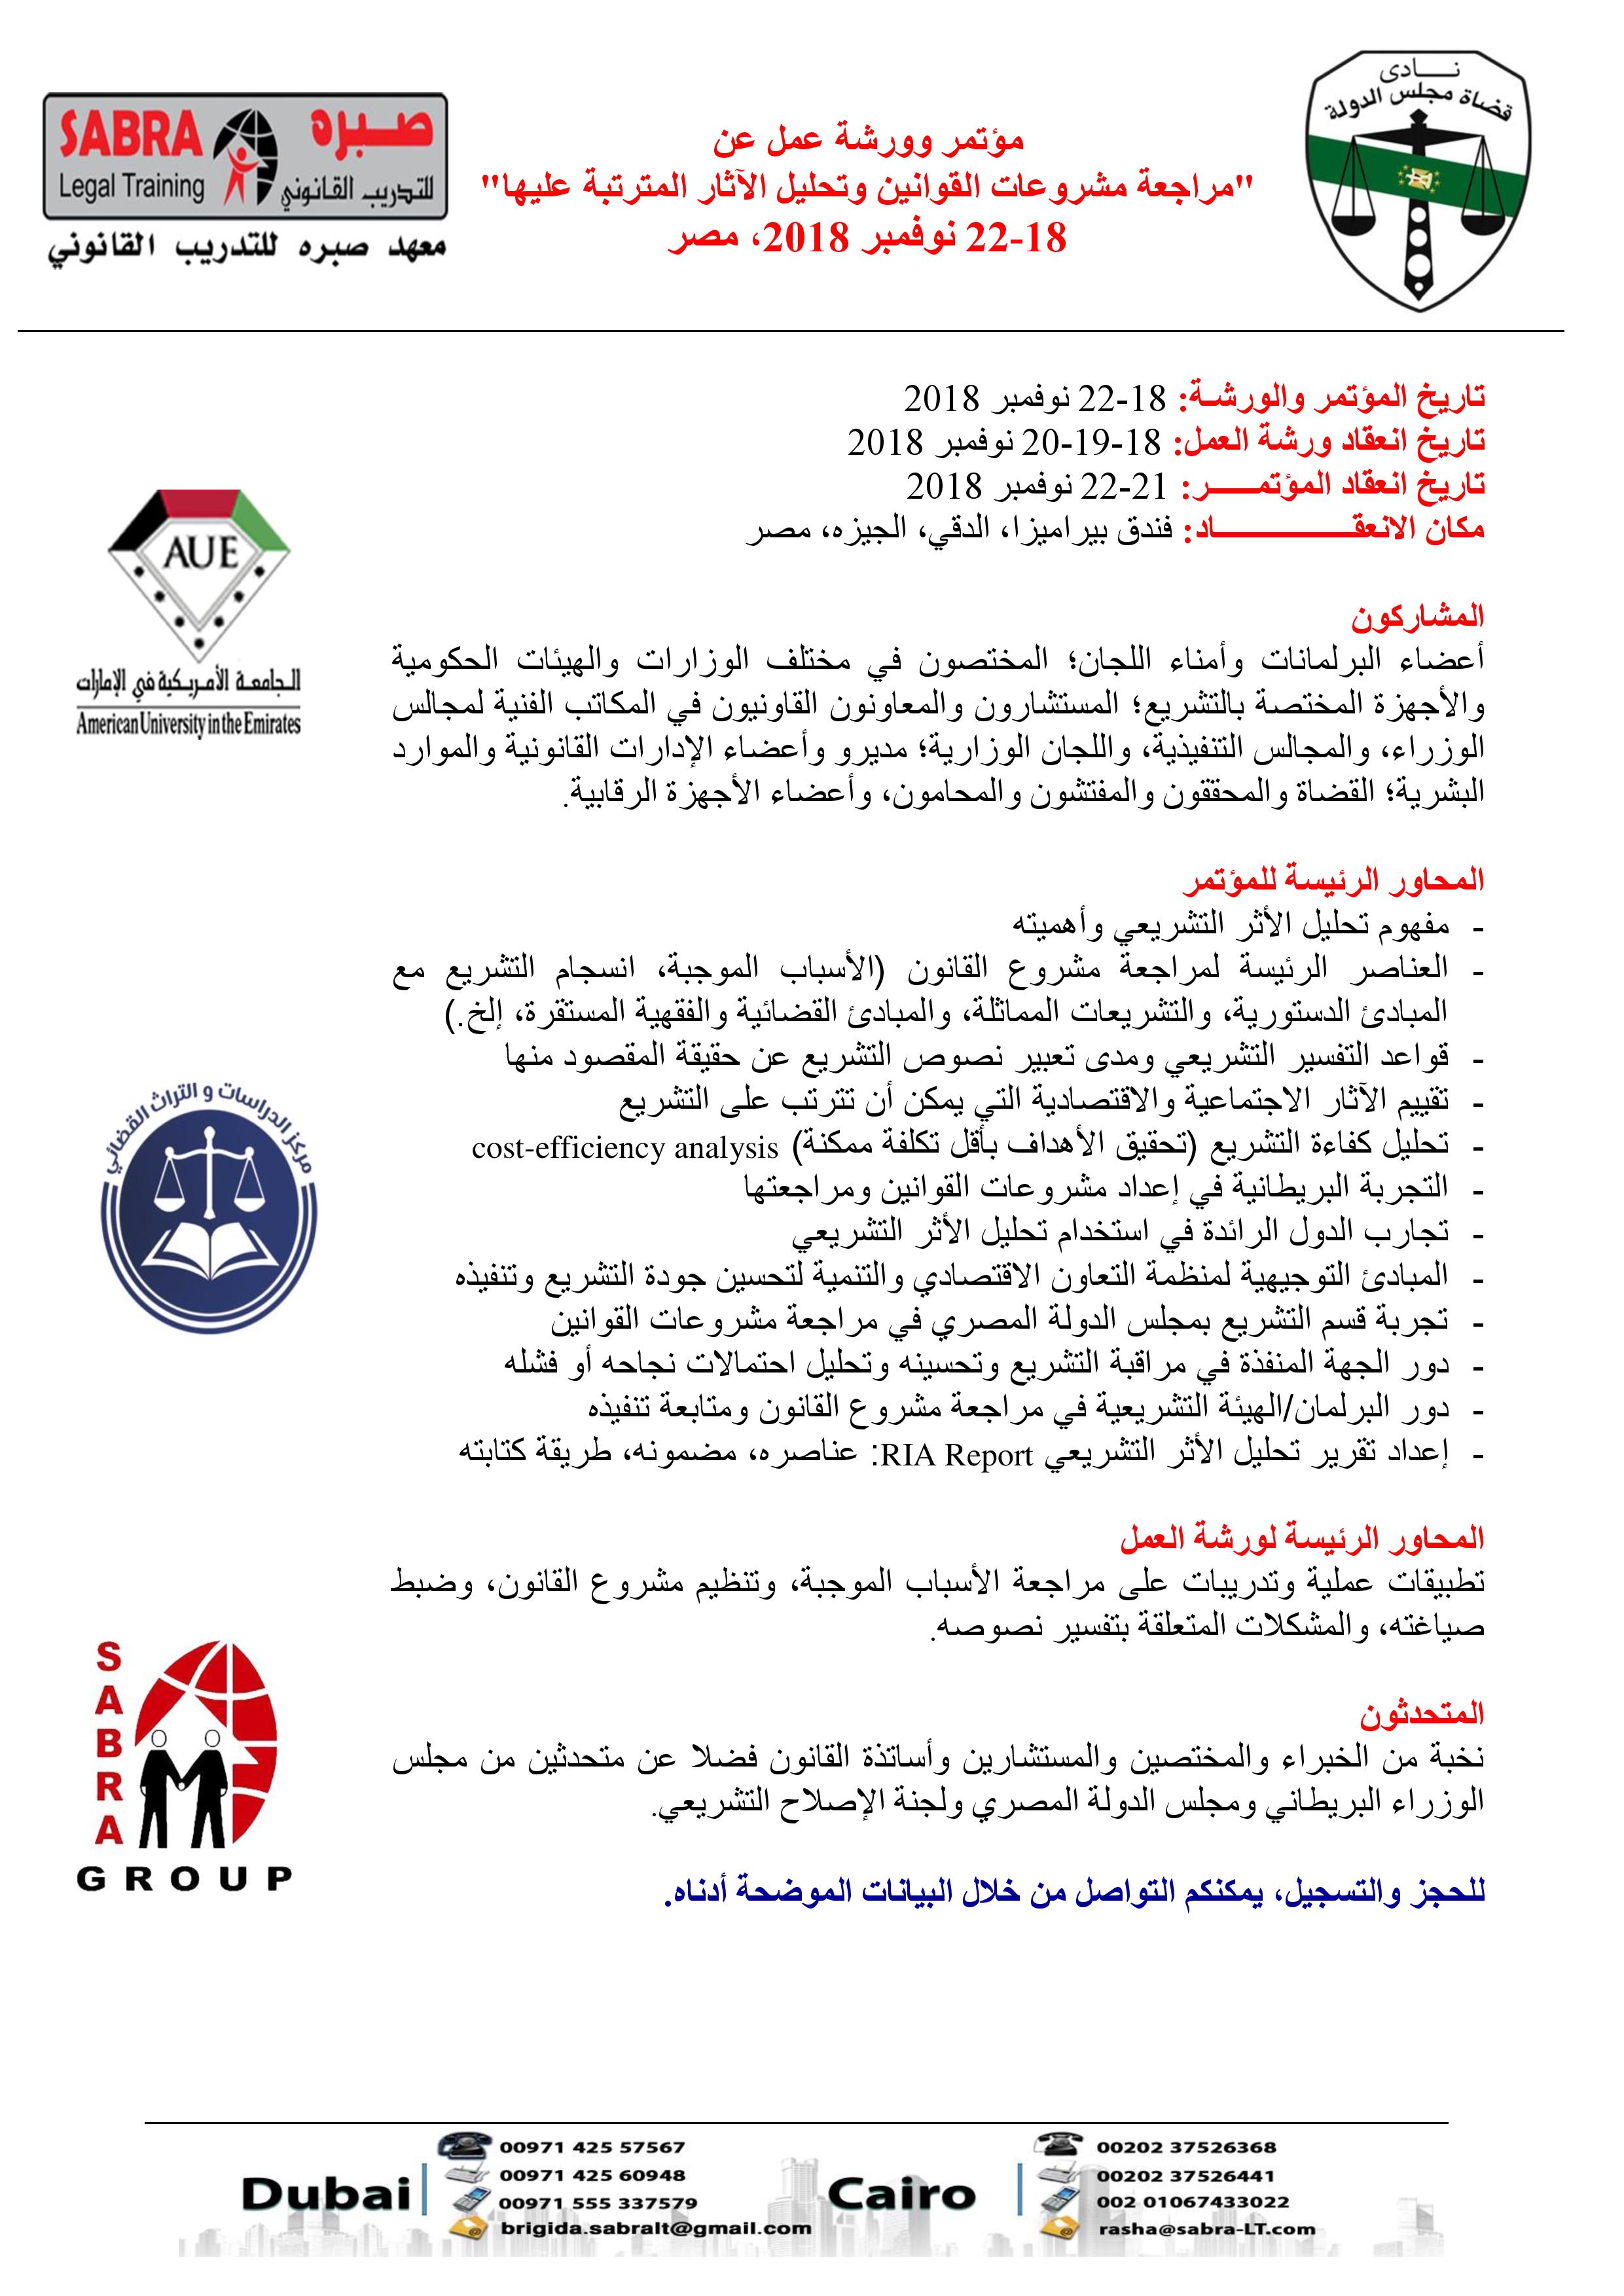 مؤتمر وورشة عمل عن "مراجعة مشروعات القوانين وتحليل الآثار المترتبة عليها" في الفترة من 18-22 نوفمبر 2018، فندق بيراميزا، القاهرة P_9492wgc11